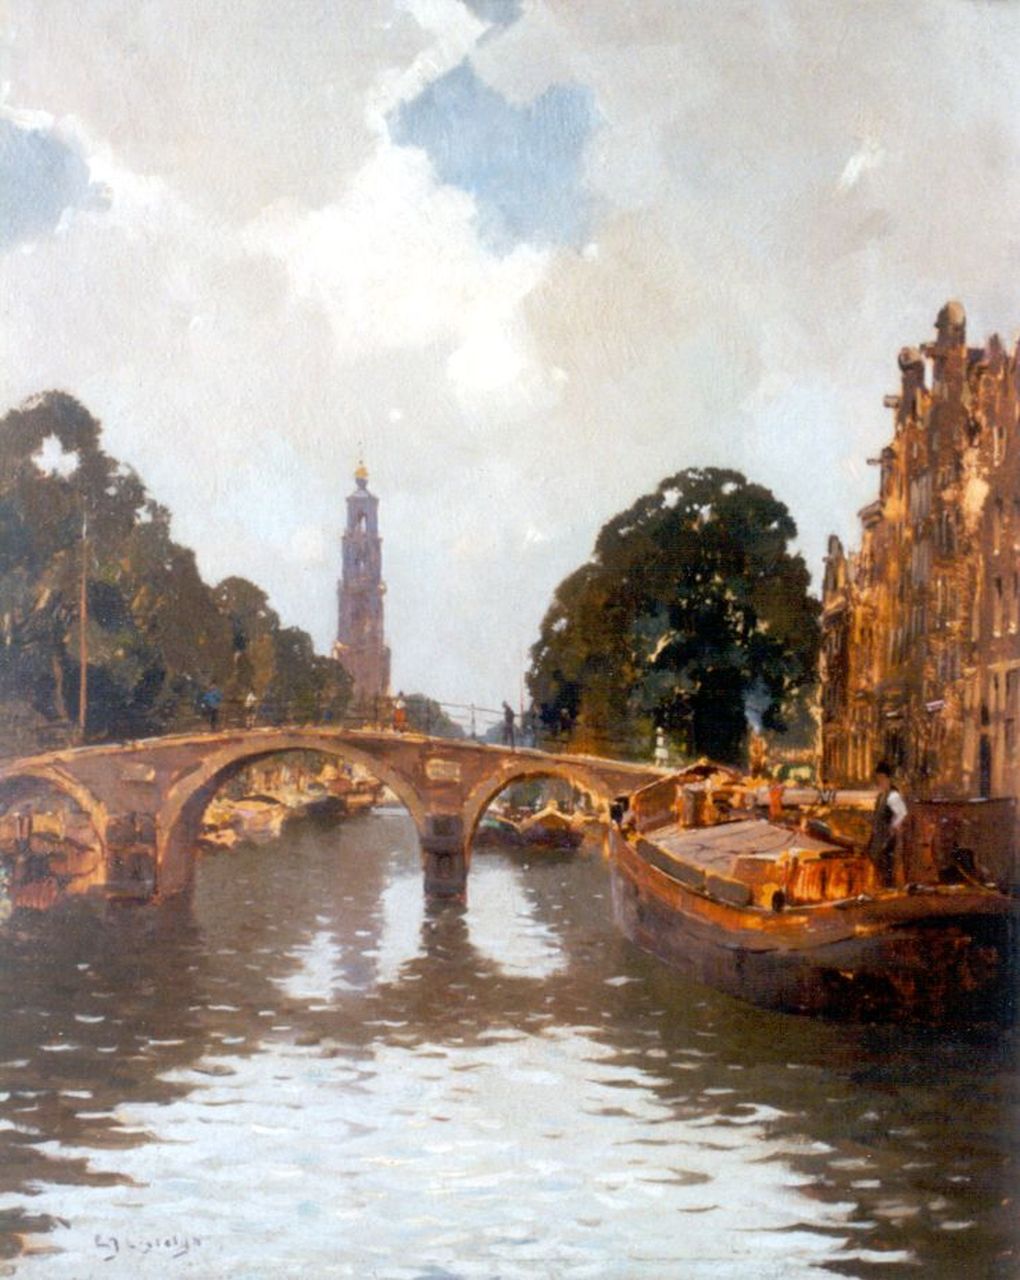 Ligtelijn E.J.  | Evert Jan Ligtelijn, De Prinsengracht in Amsterdam met de Westertoren, olieverf op schildersboard 50,0 x 40,0 cm, gesigneerd linksonder